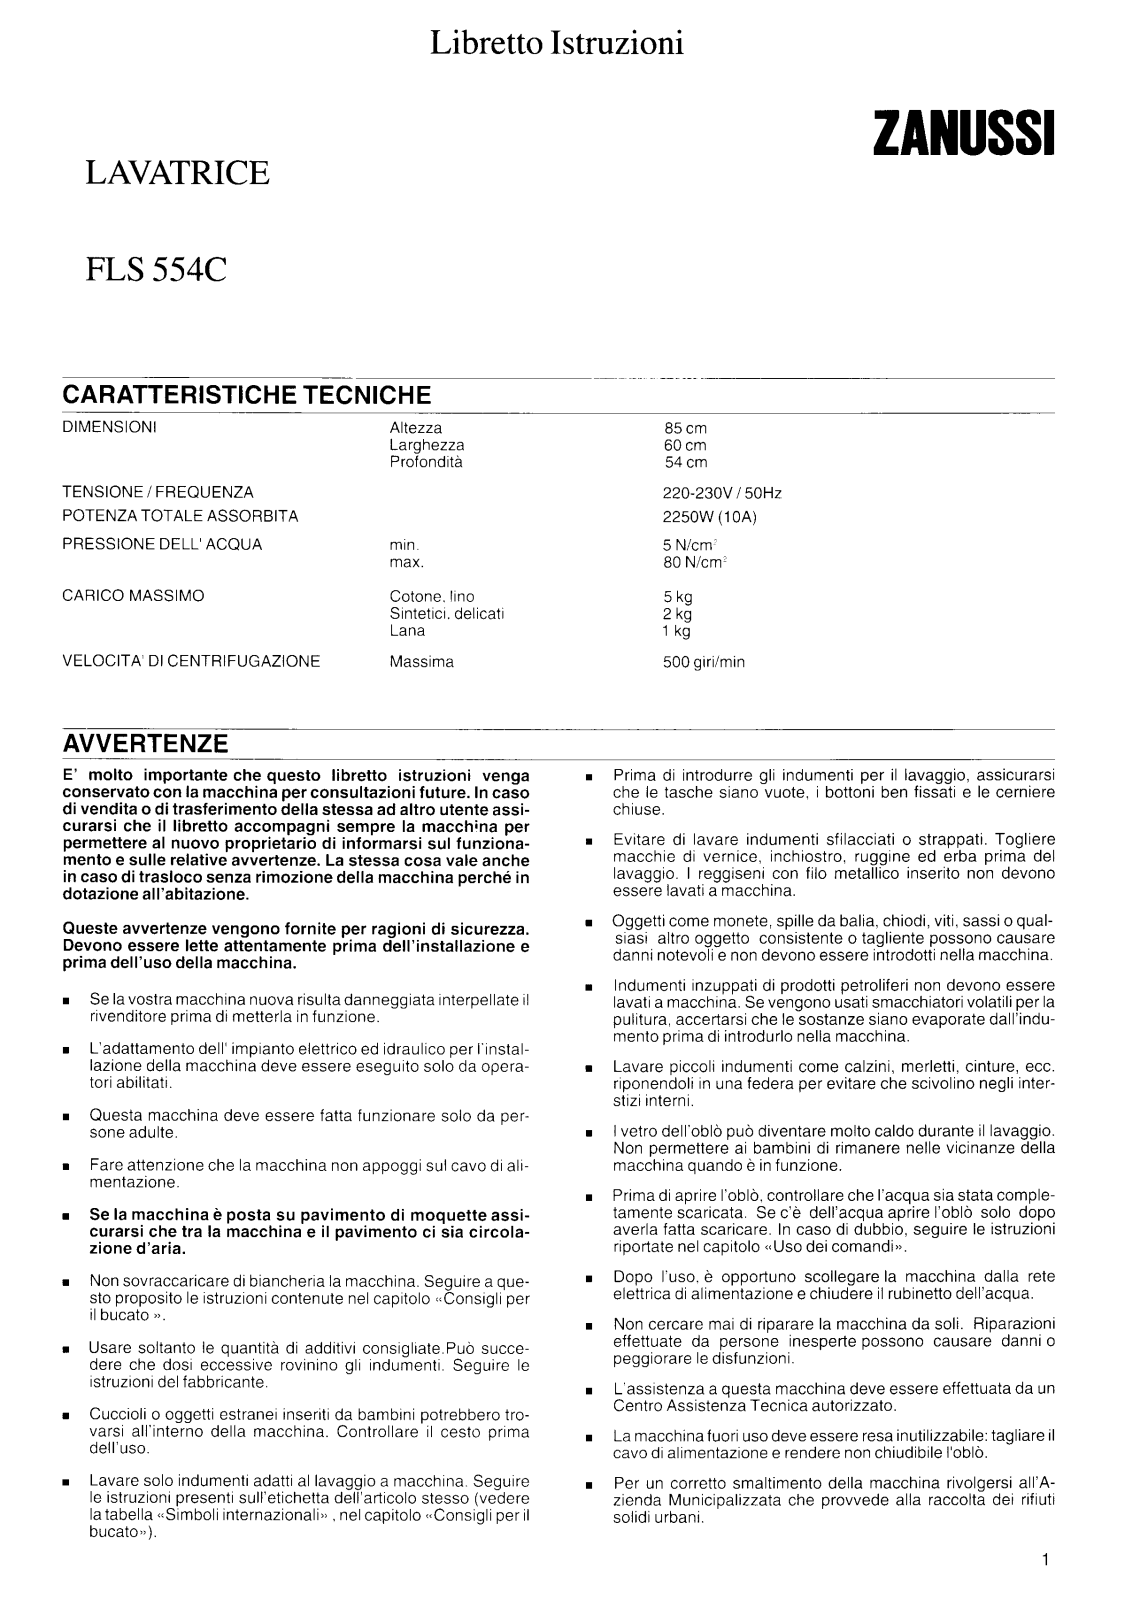 Zanussi FLS554C User Manual